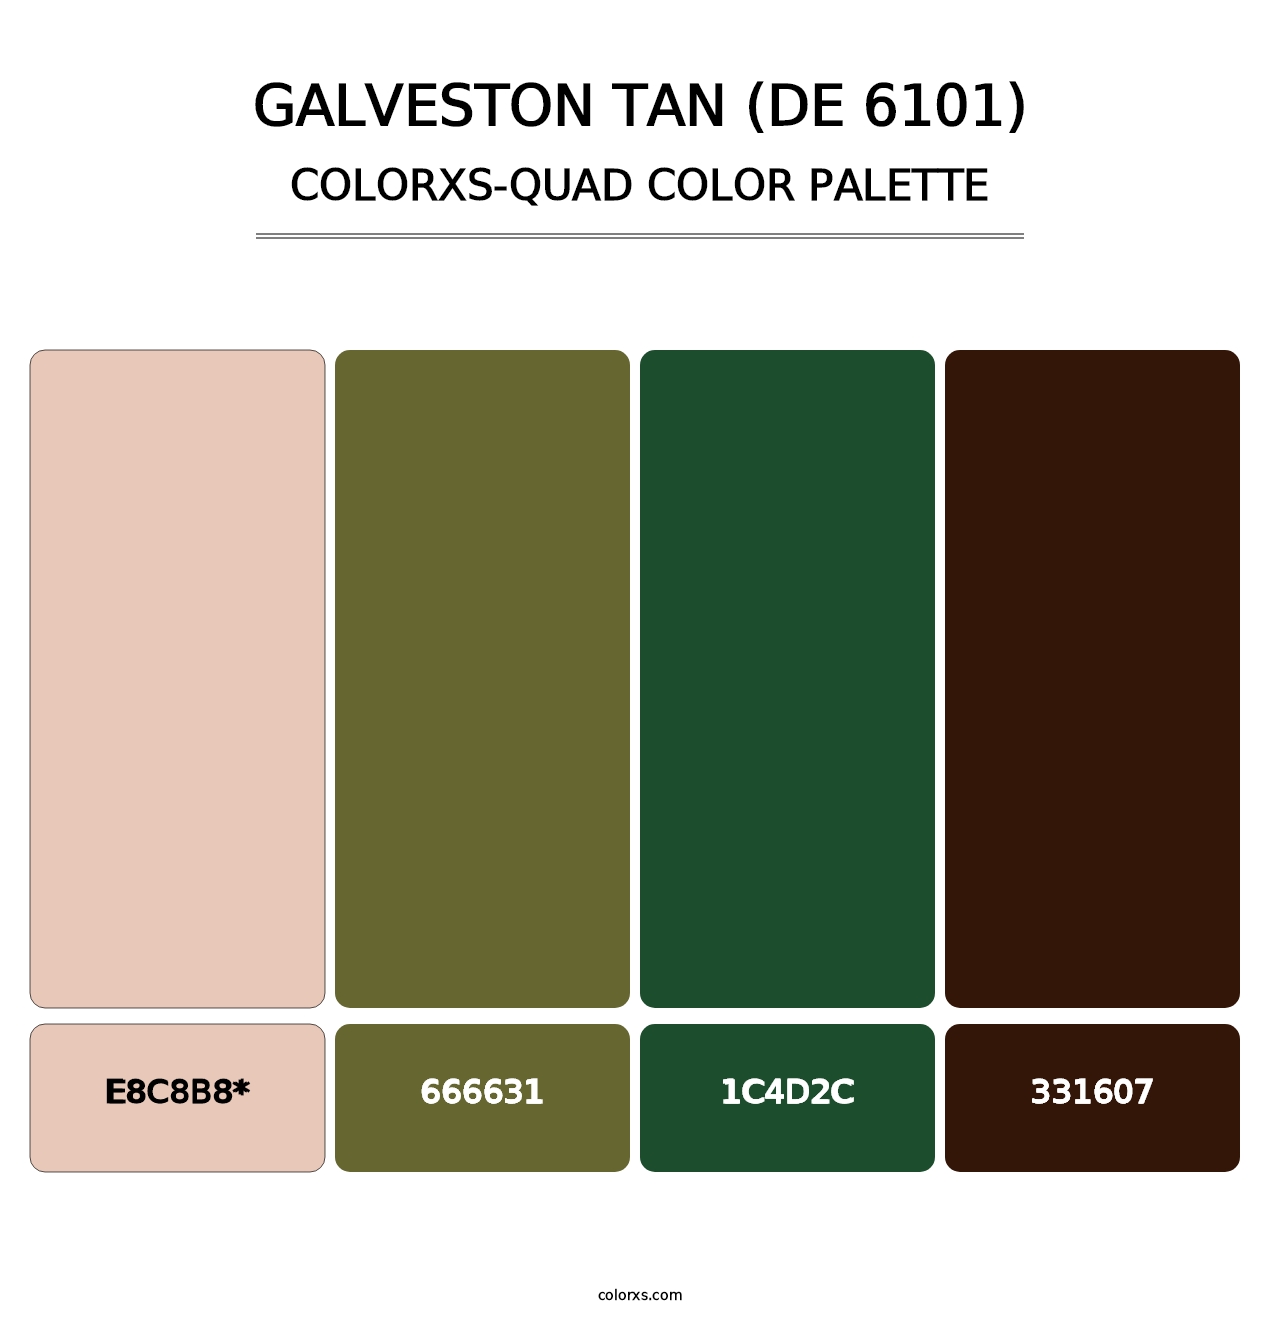 Galveston Tan (DE 6101) - Colorxs Quad Palette